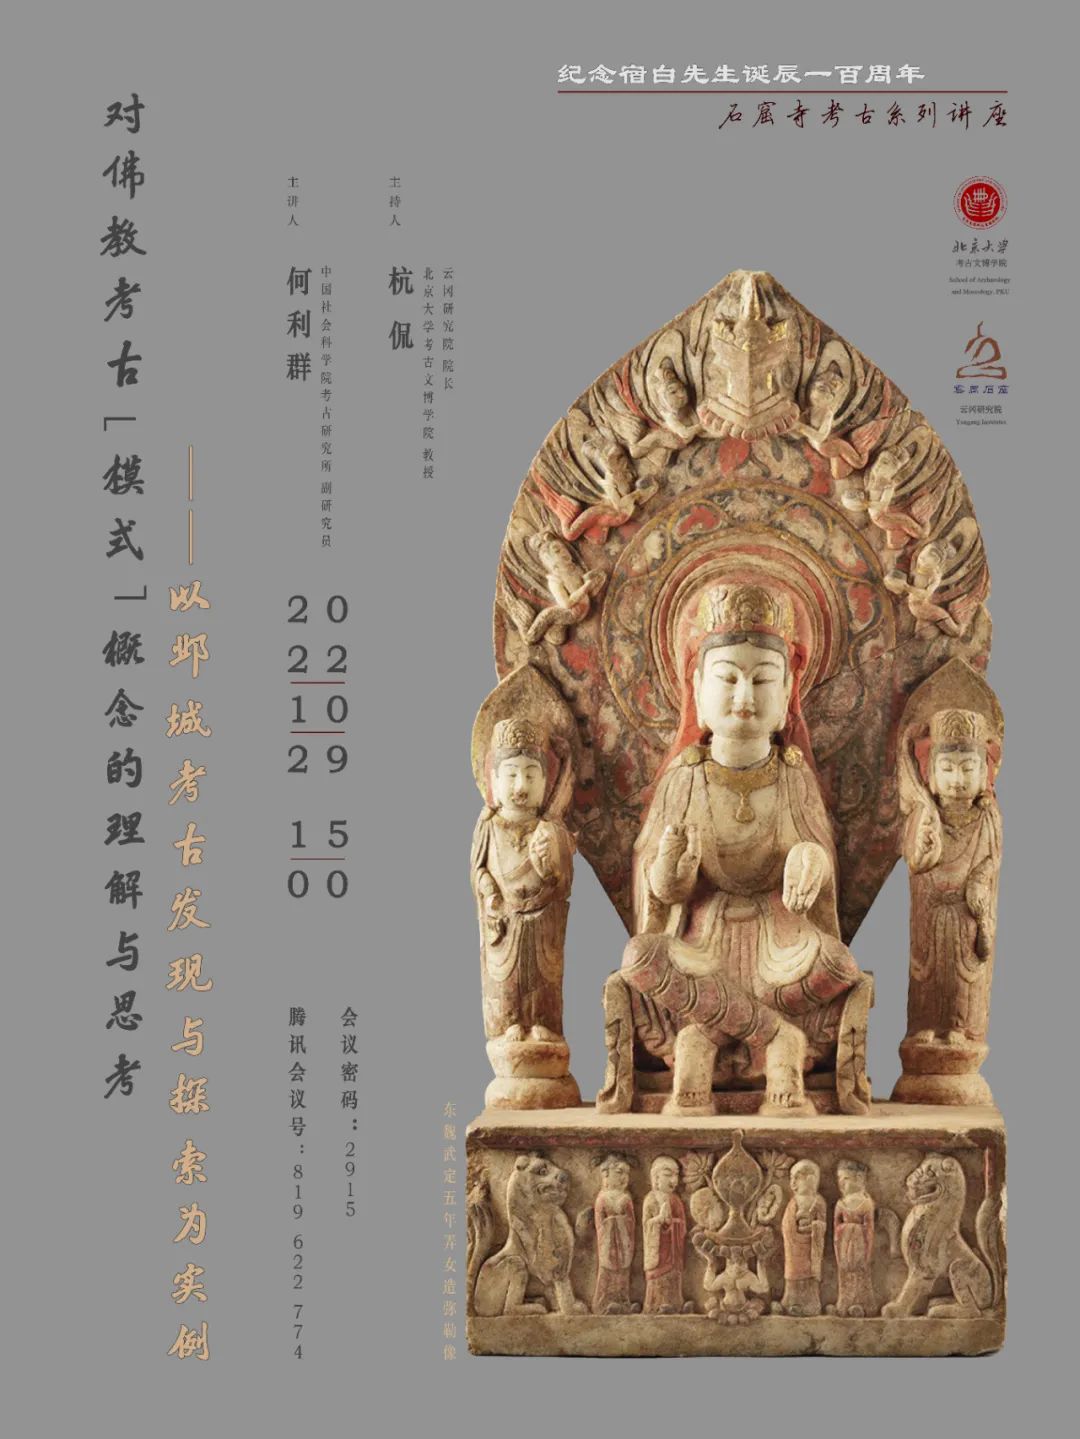 讲座预告| 何利群：对佛教考古“模式”概念的理解与思考——以邺城考古发现 